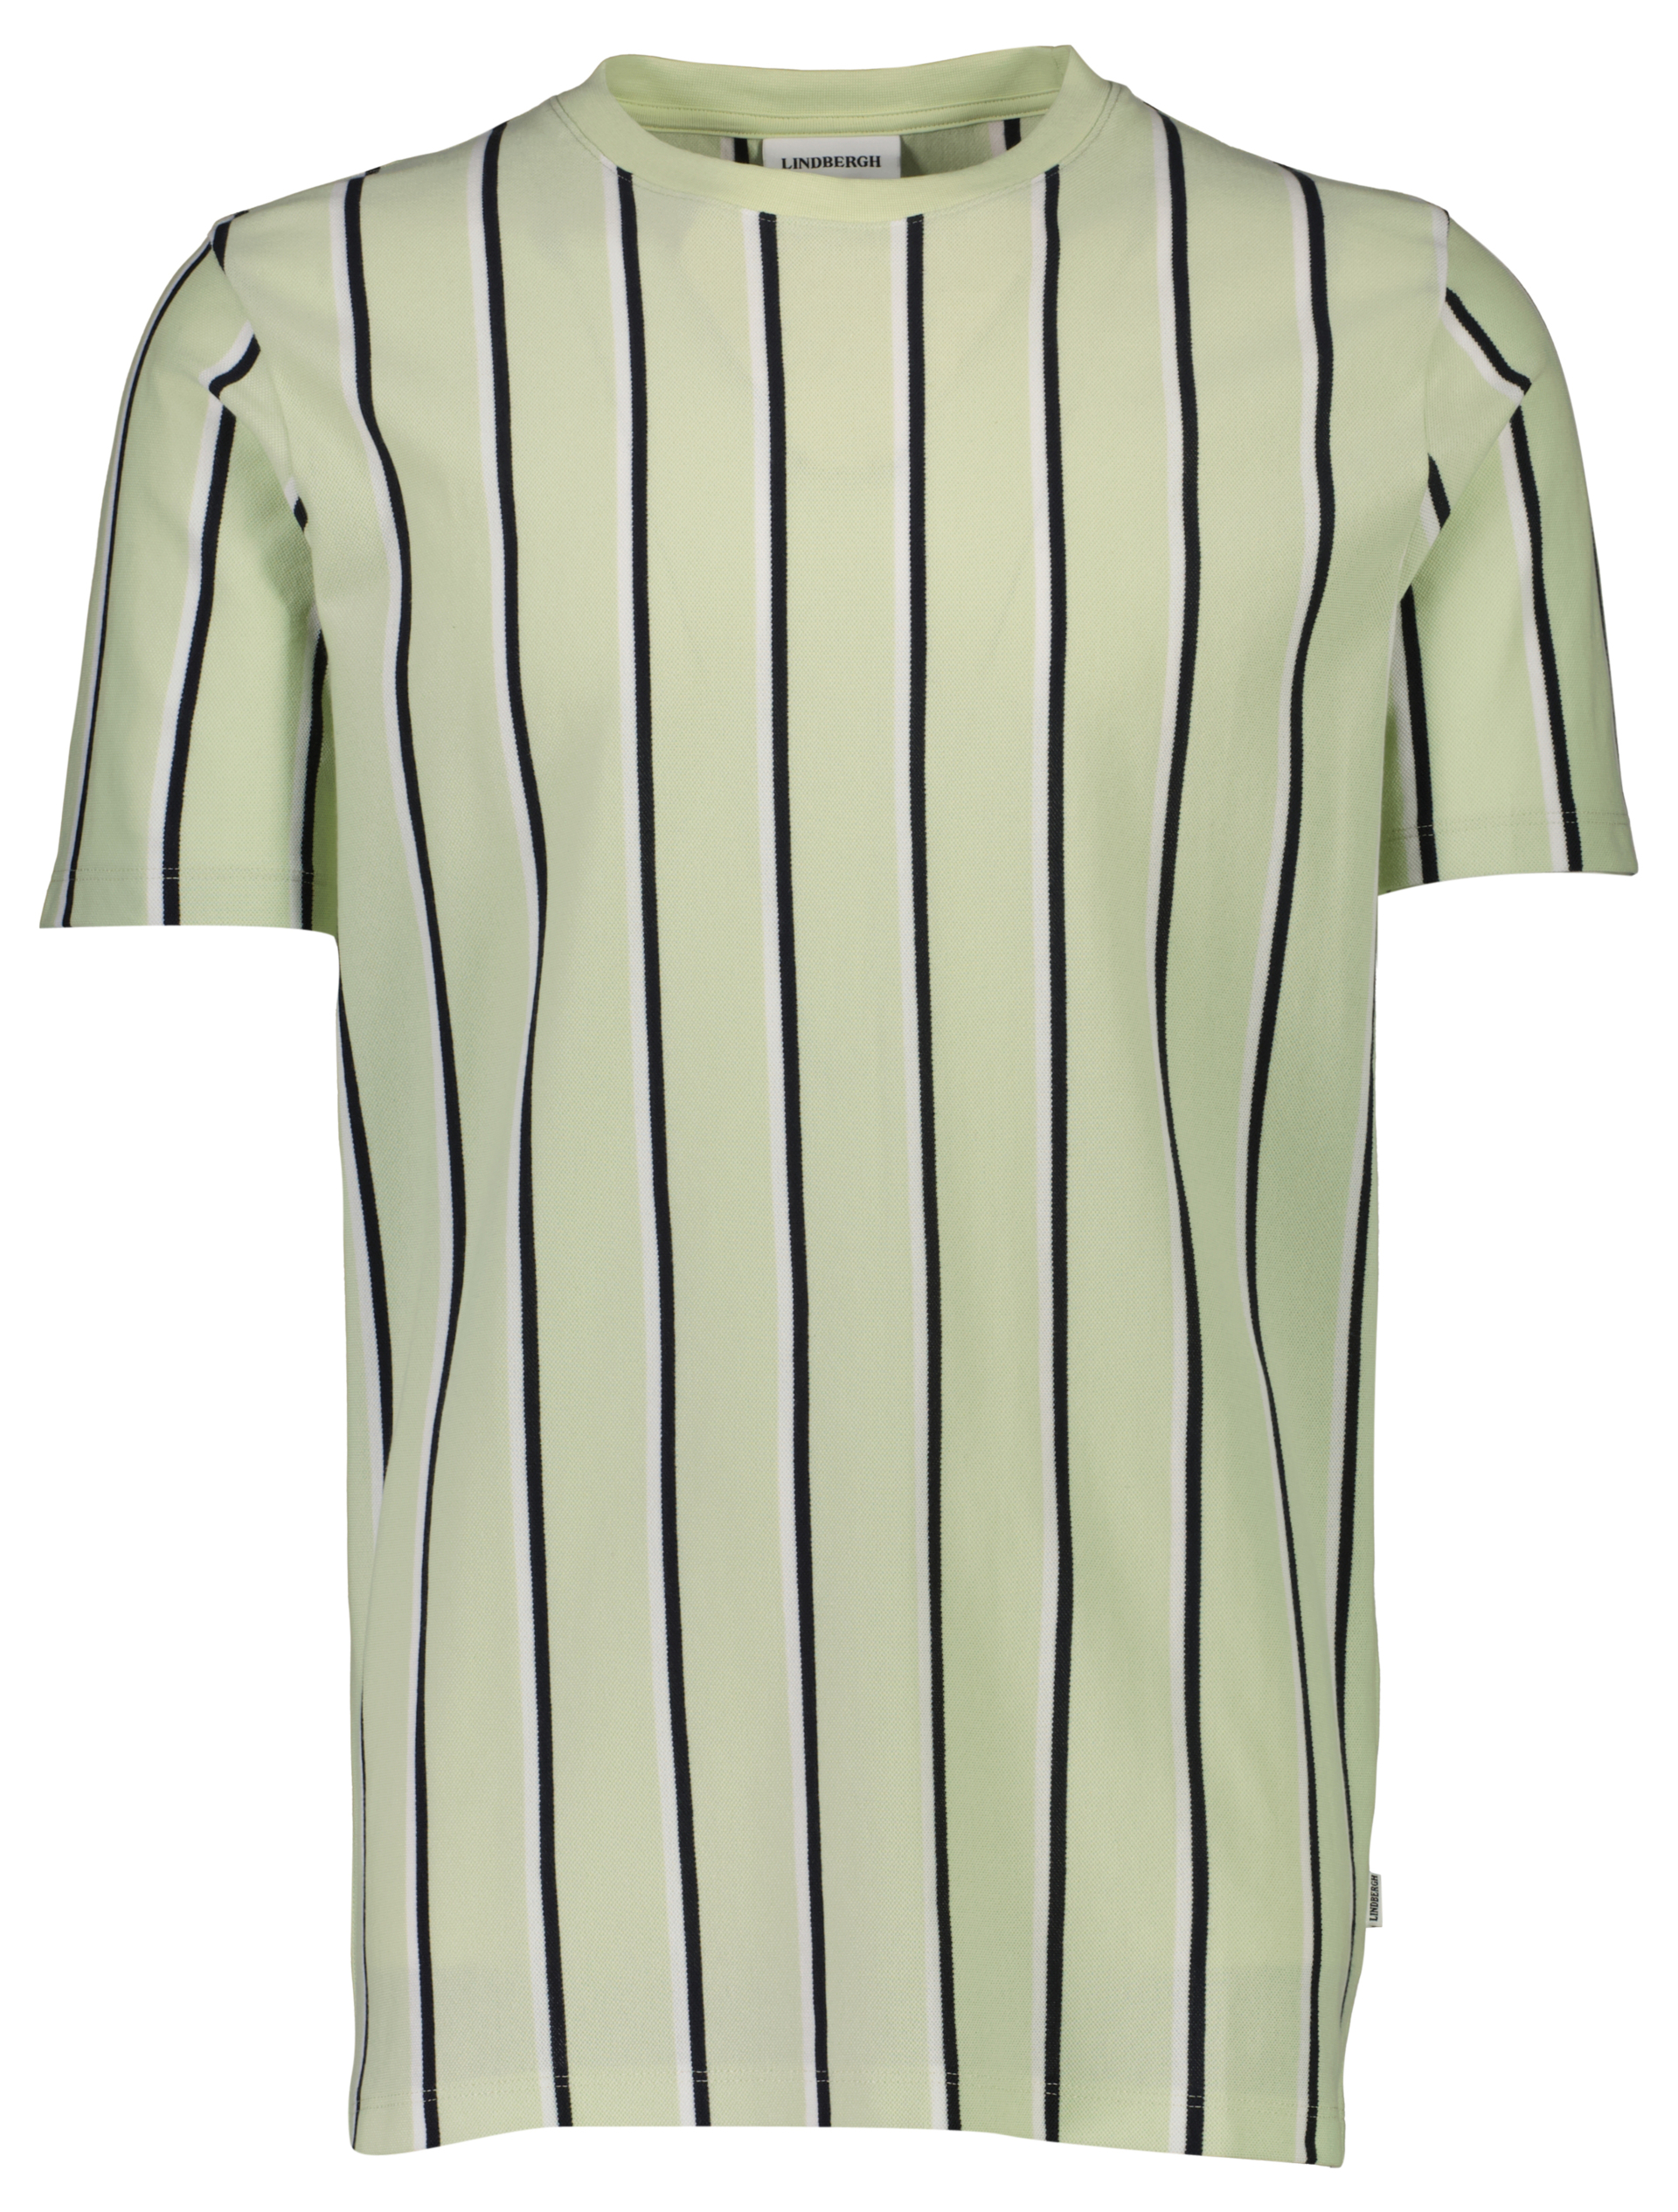 Lindbergh T-shirt grøn / mint